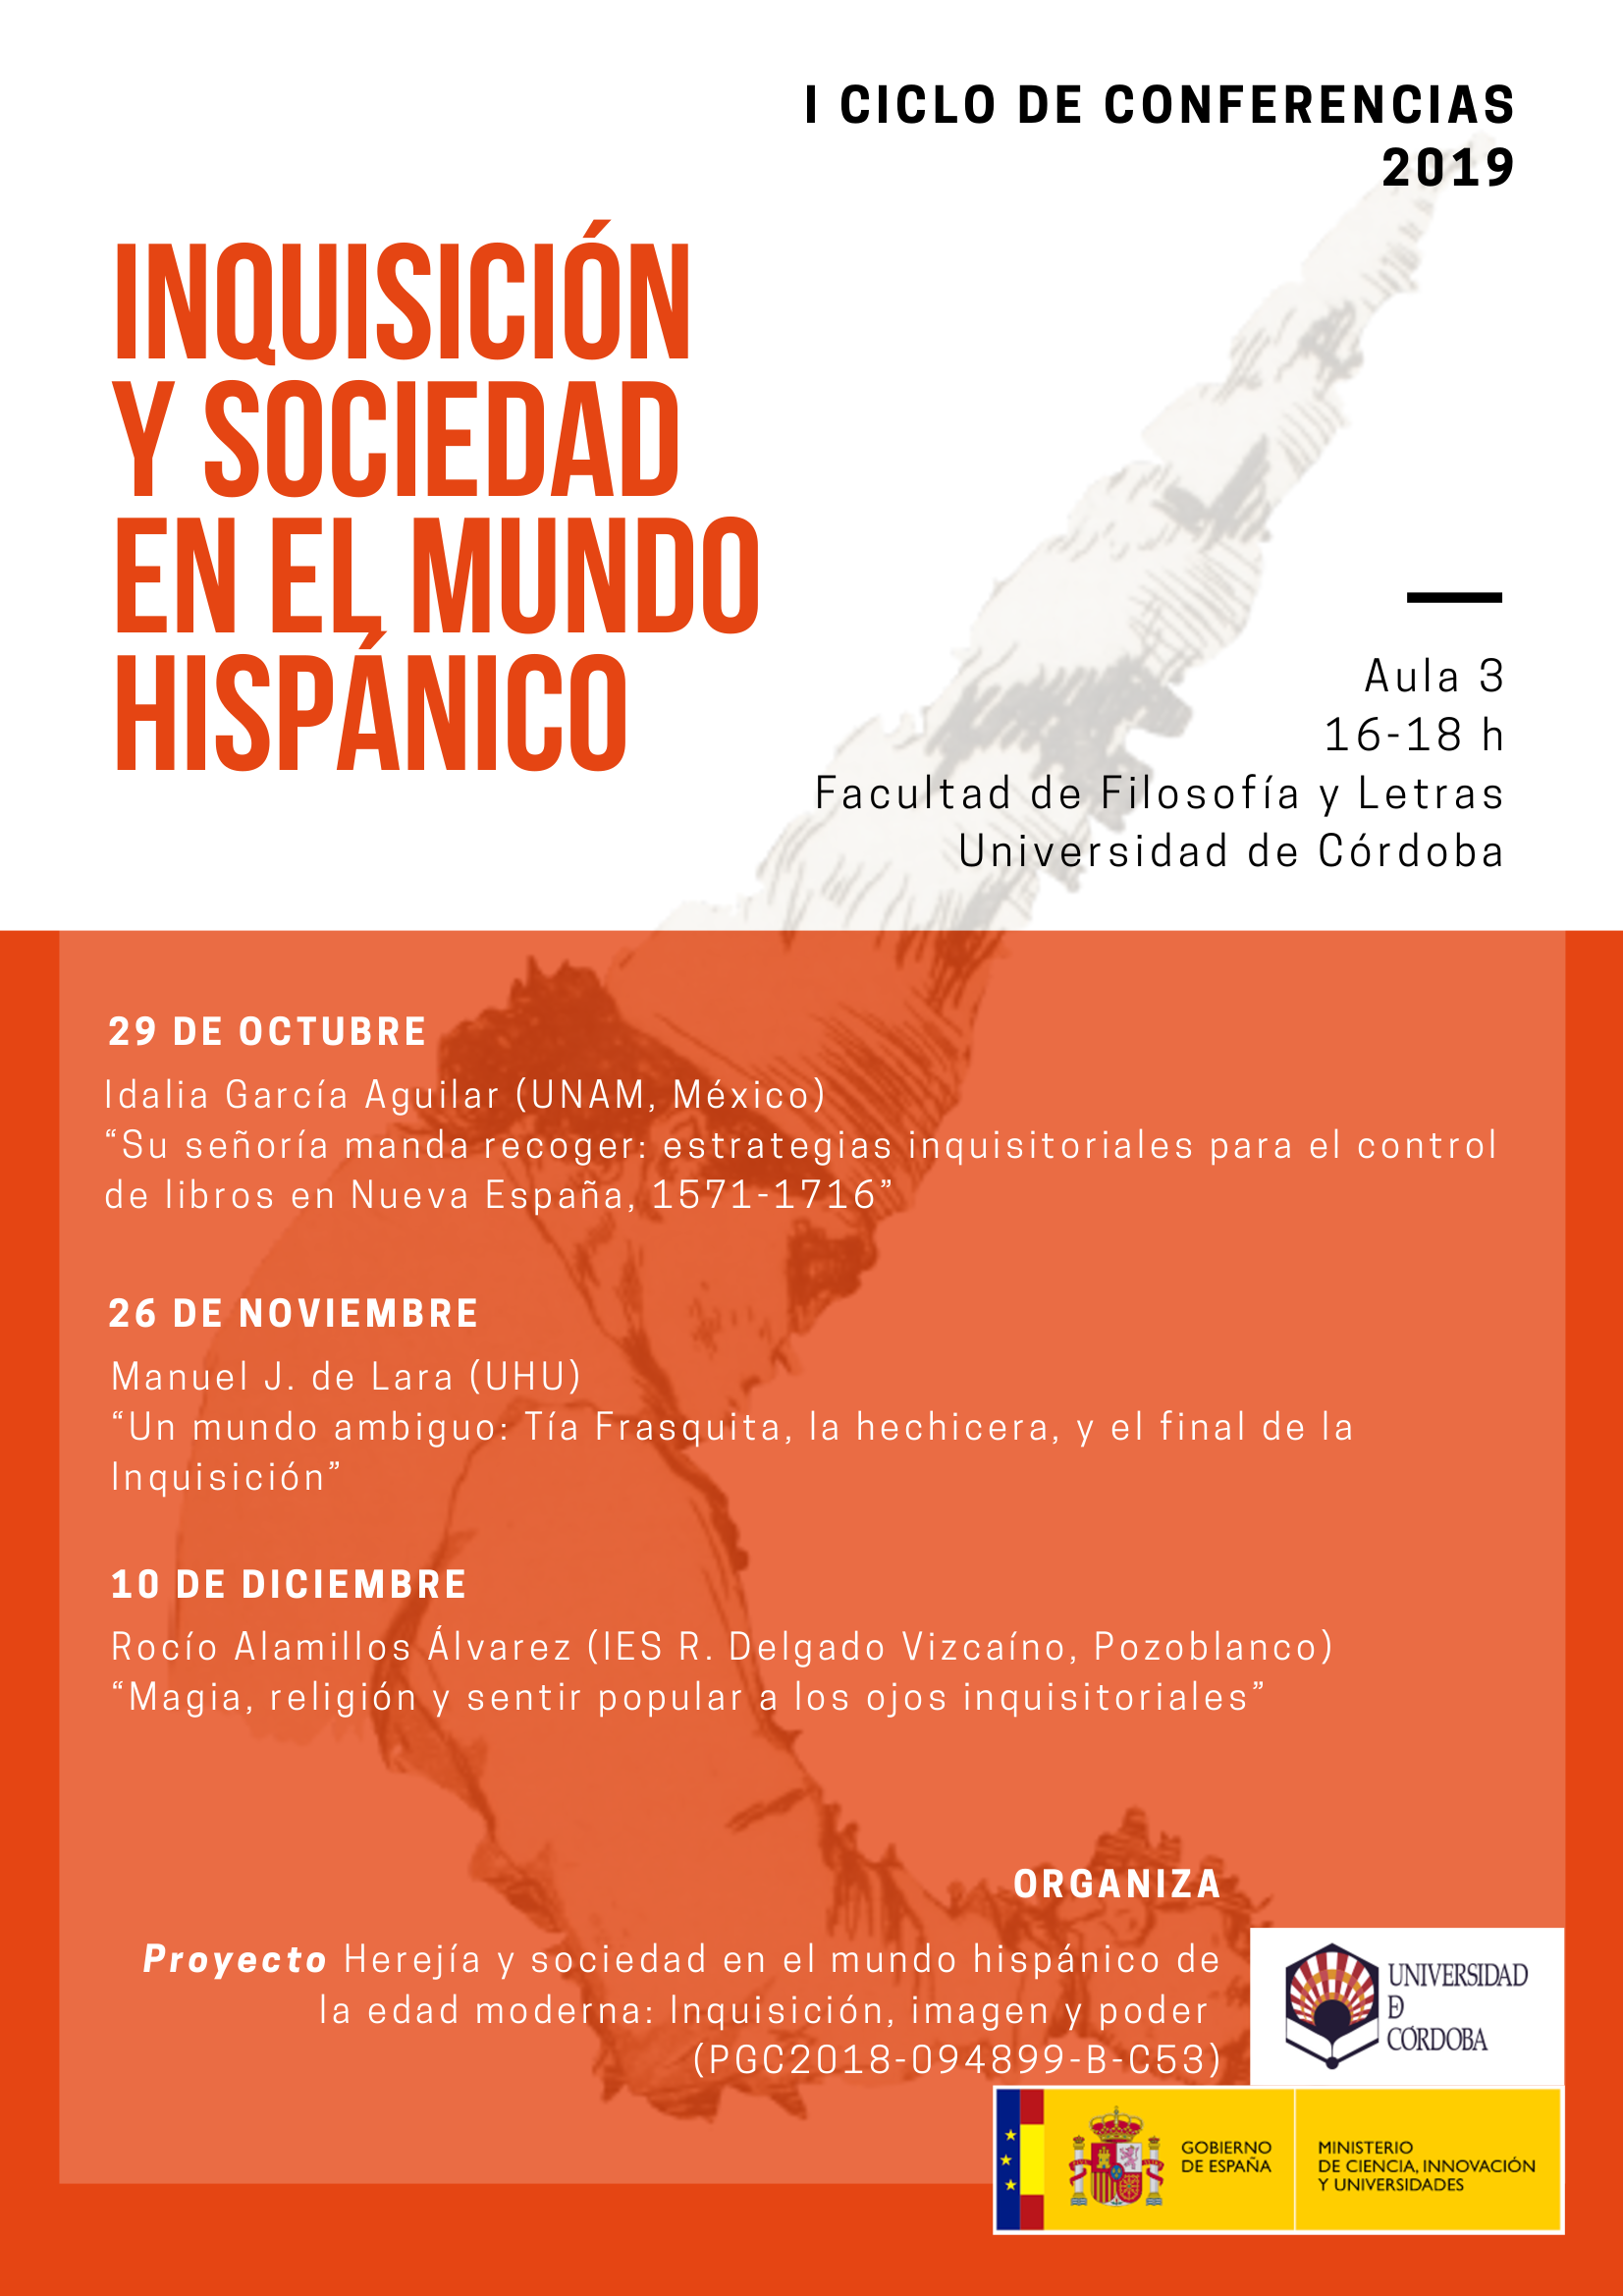 Inquisicioìn herejiìa y sociedad en el mundo hispainicoI Ciclo de conferencias 2019